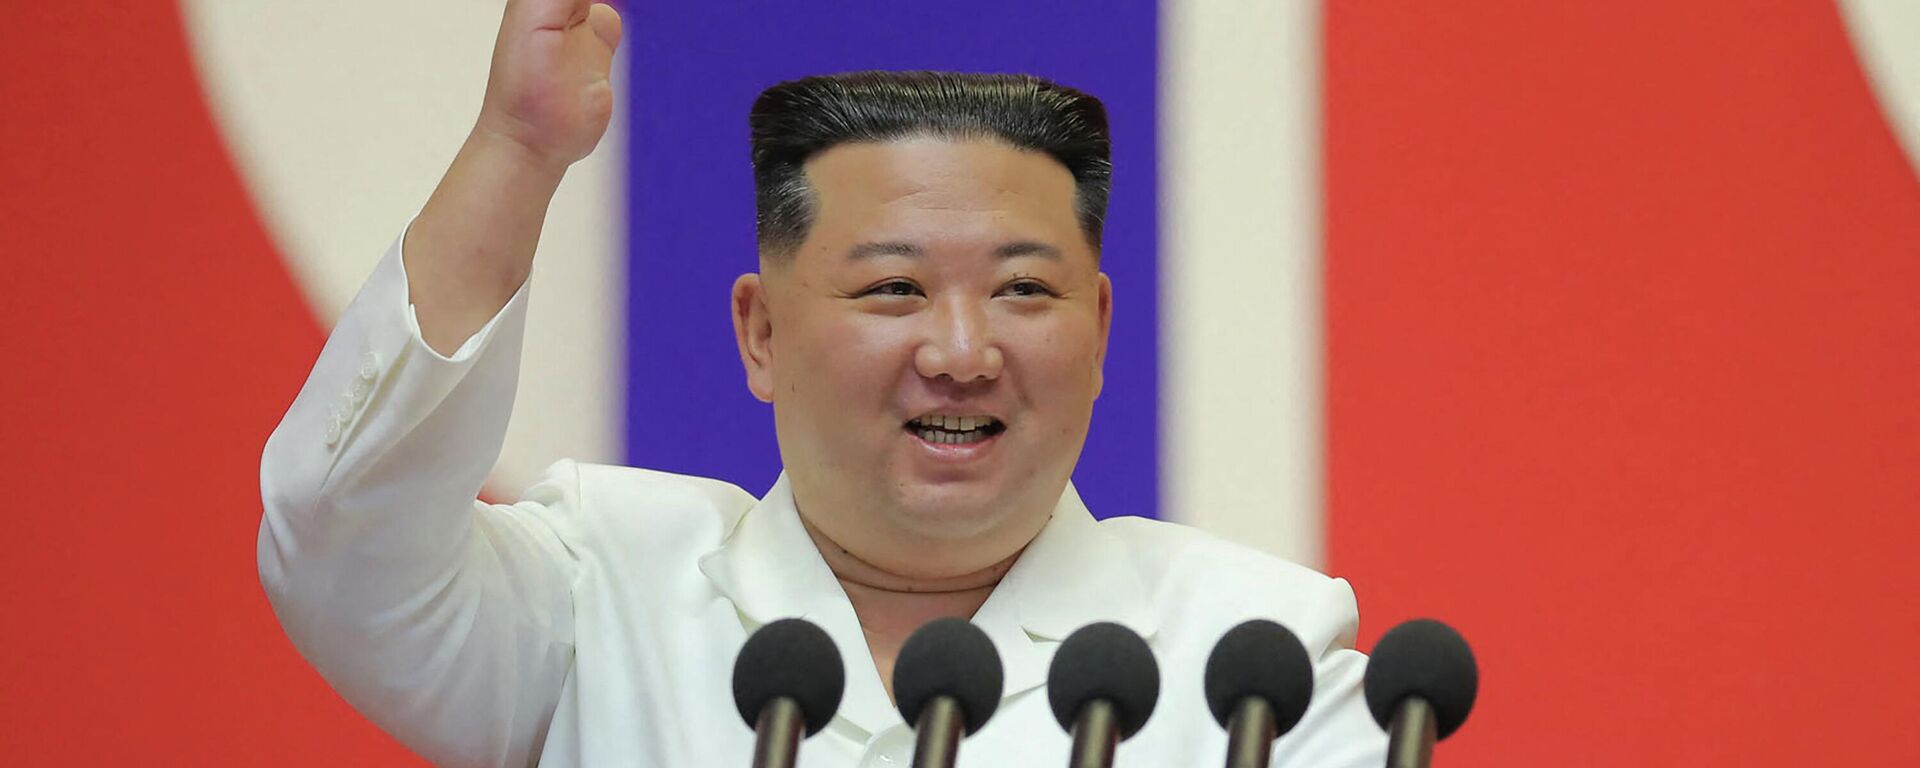 زعيم كوريا الشمالية، كيم جونغ أون، يلقي خطابا لتهنئة أعضاء القسم الطبي العسكري بالجيش الشعبي الكوري على المساهمة في منع انتشار (كوفيد-19) في بيونغ يانغ، 18 أغسطس/ آب 2022 - سبوتنيك عربي, 1920, 07.02.2023